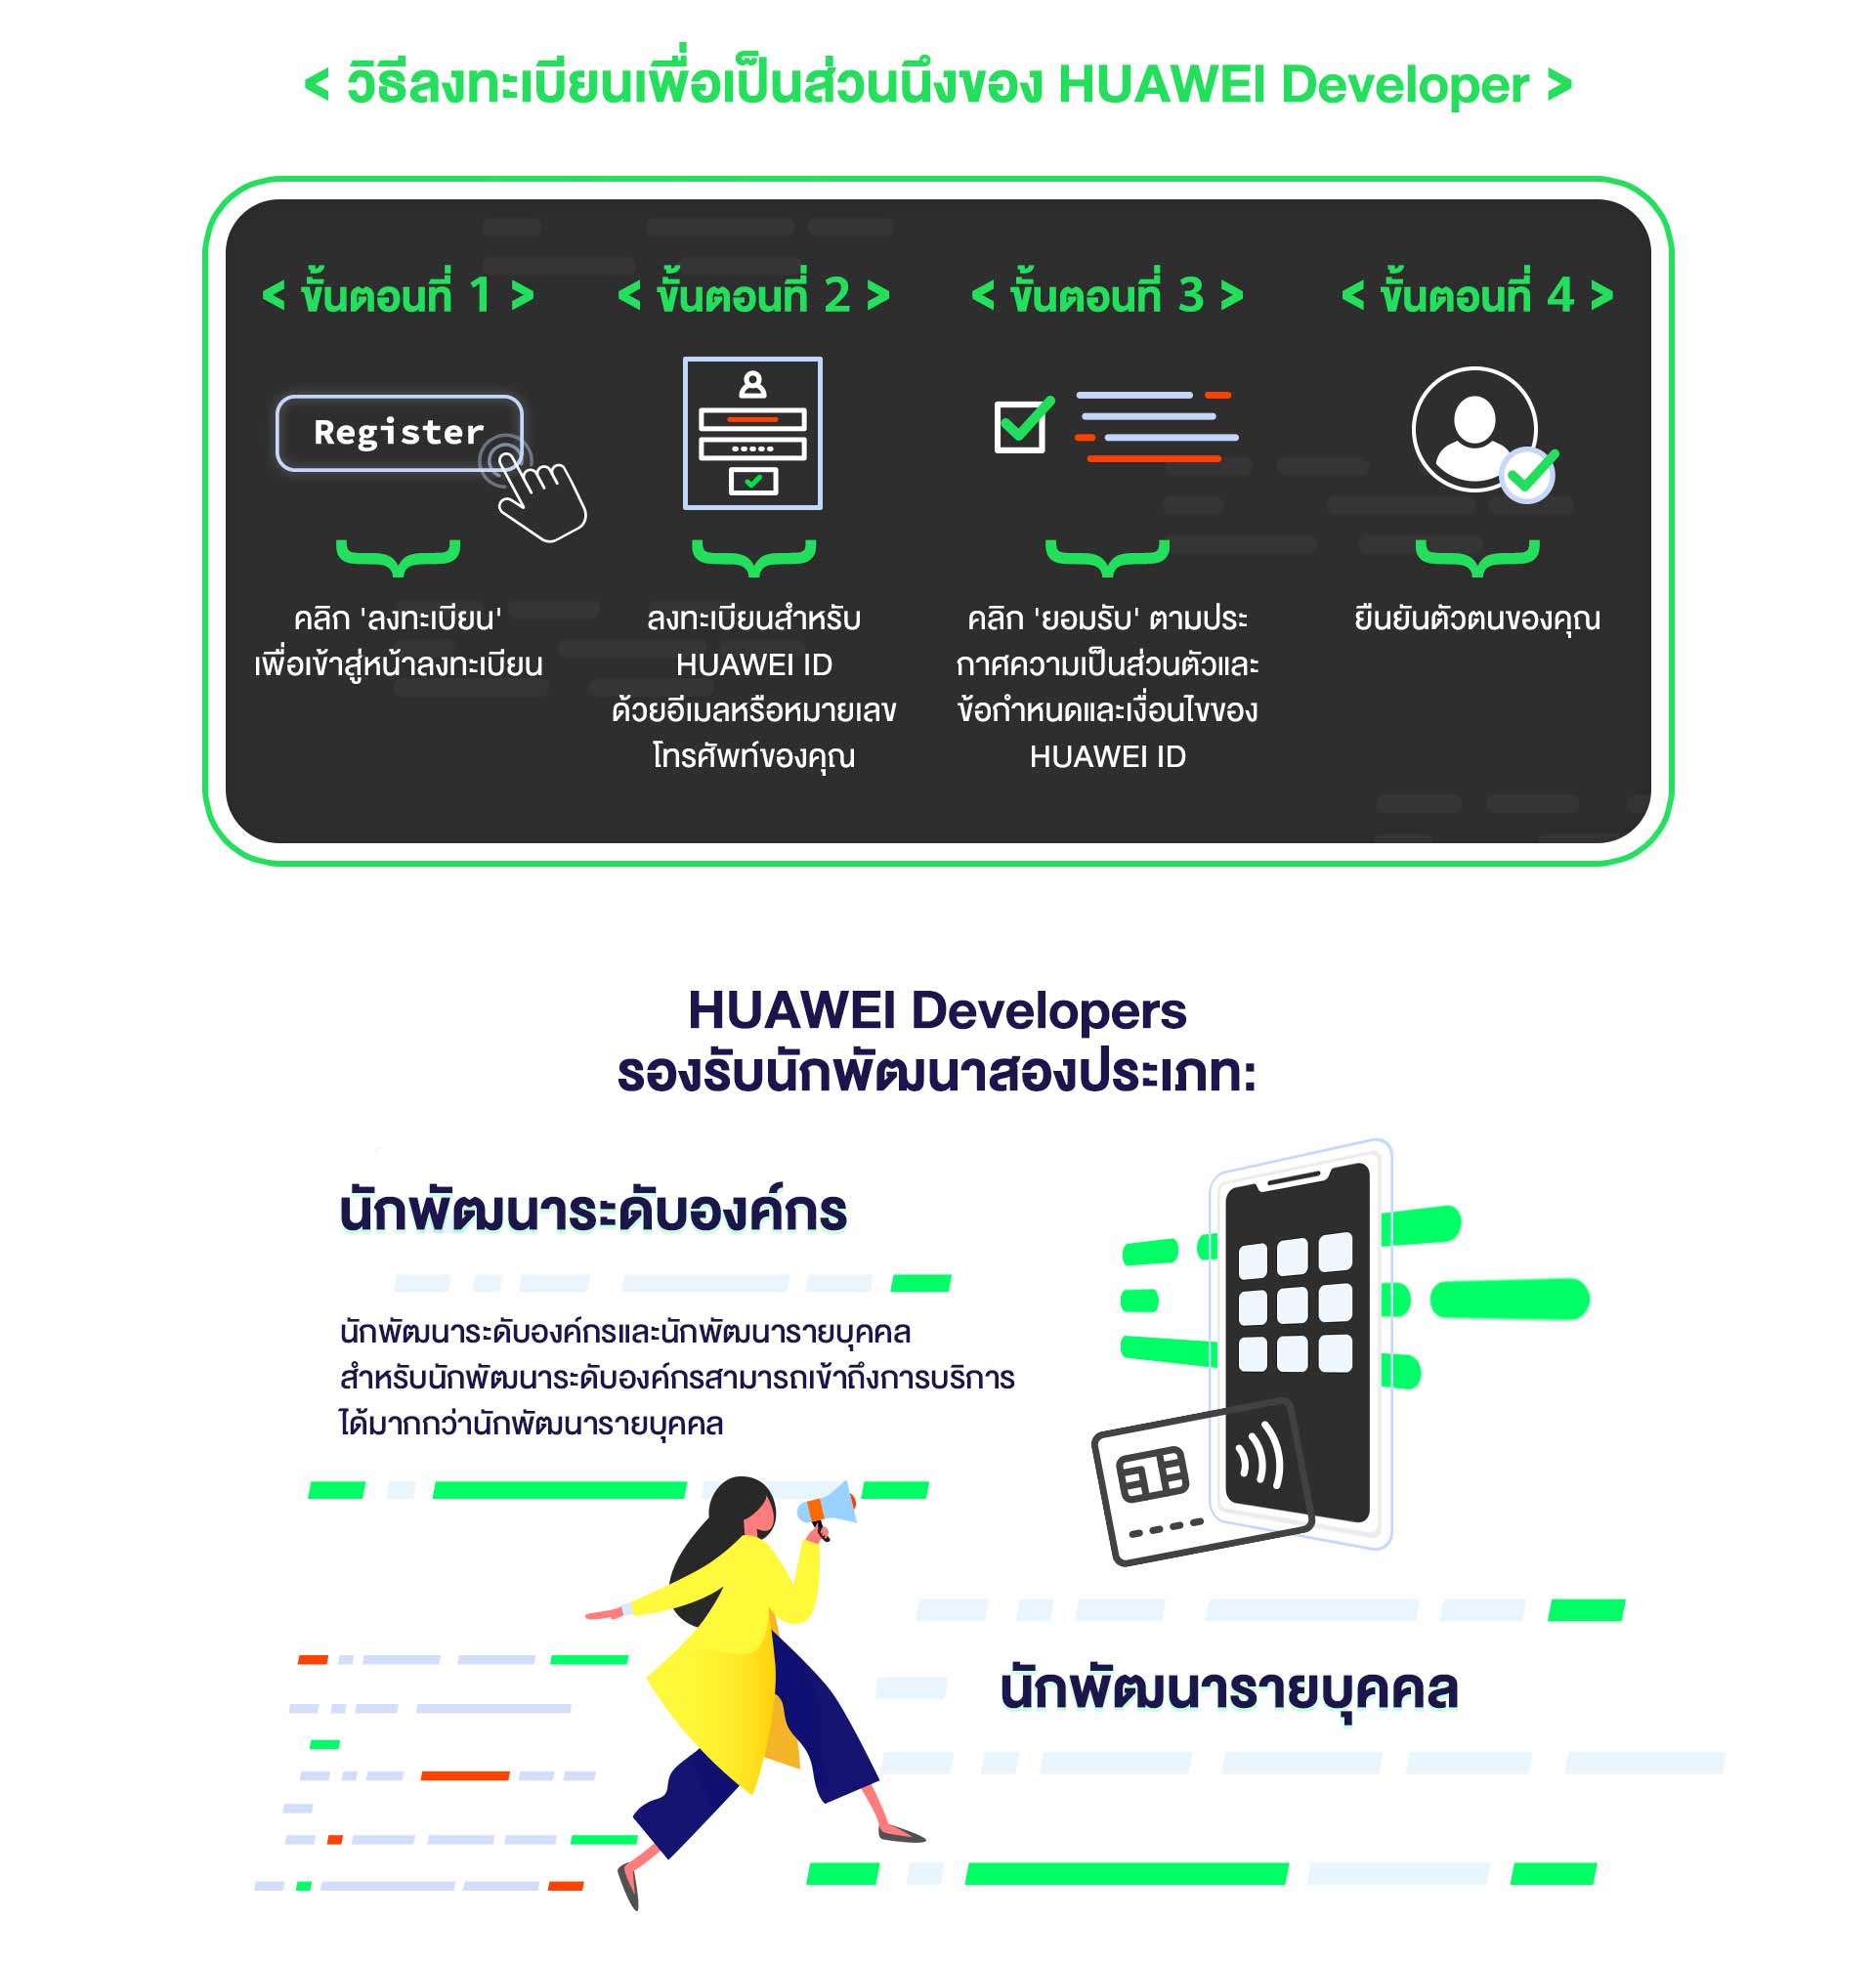 สมัครเป็นนักพัฒนา HUAWEI วันนี้ | HUAWEI Developer